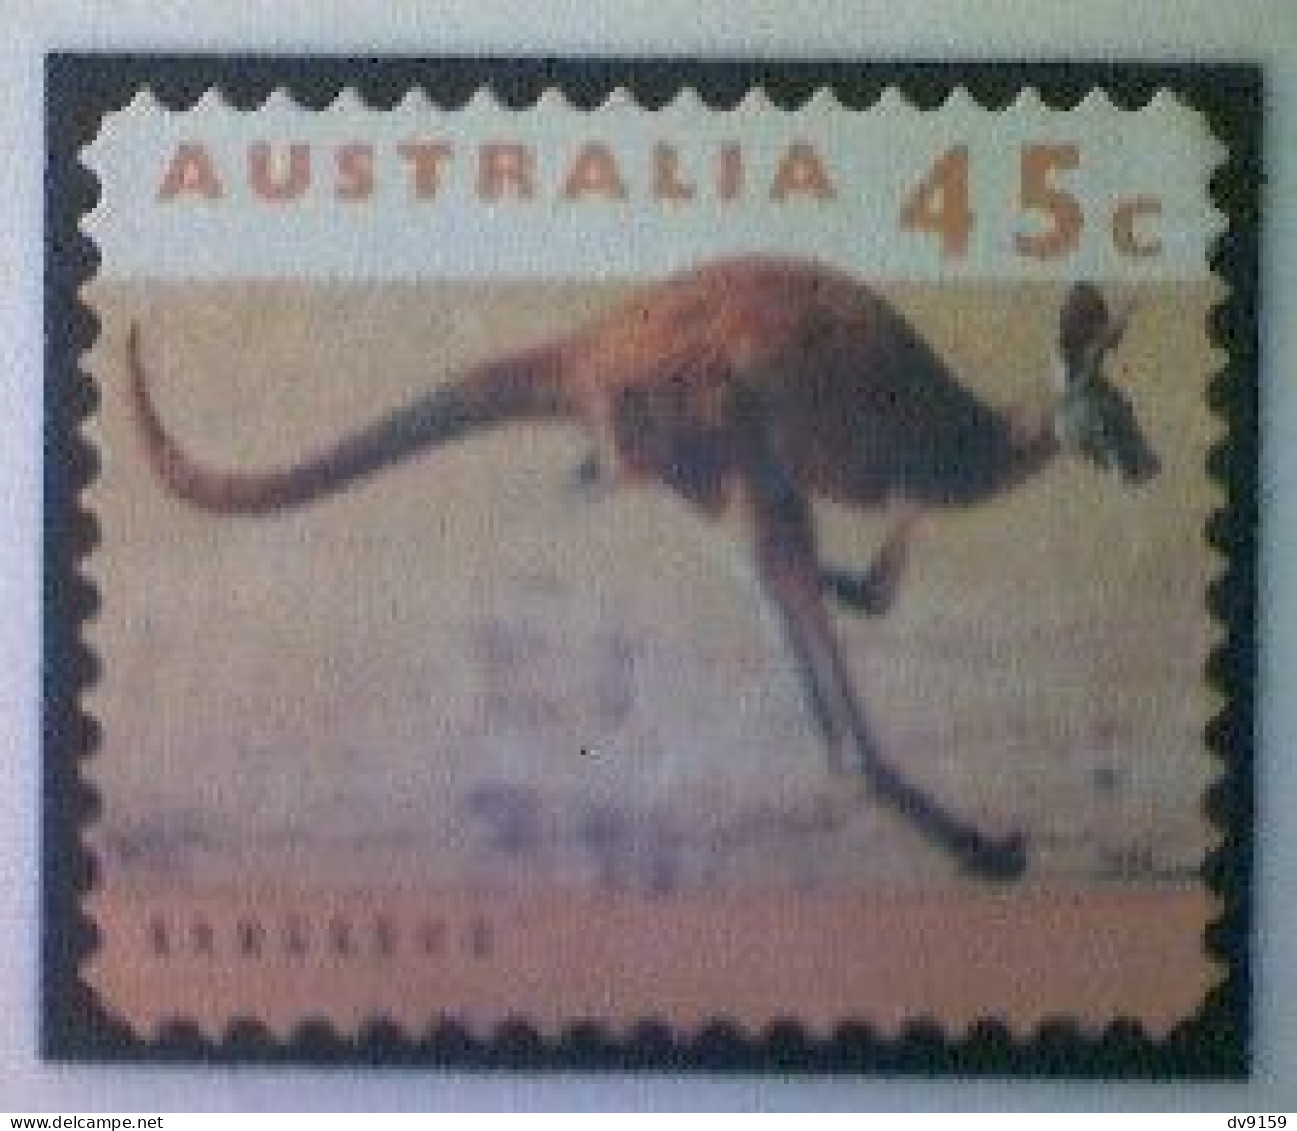 Australia, Scott #1288, Used (o), 1994, Wildlife Series, Kangaroo, 45¢, Orange And Multicolored - Usati